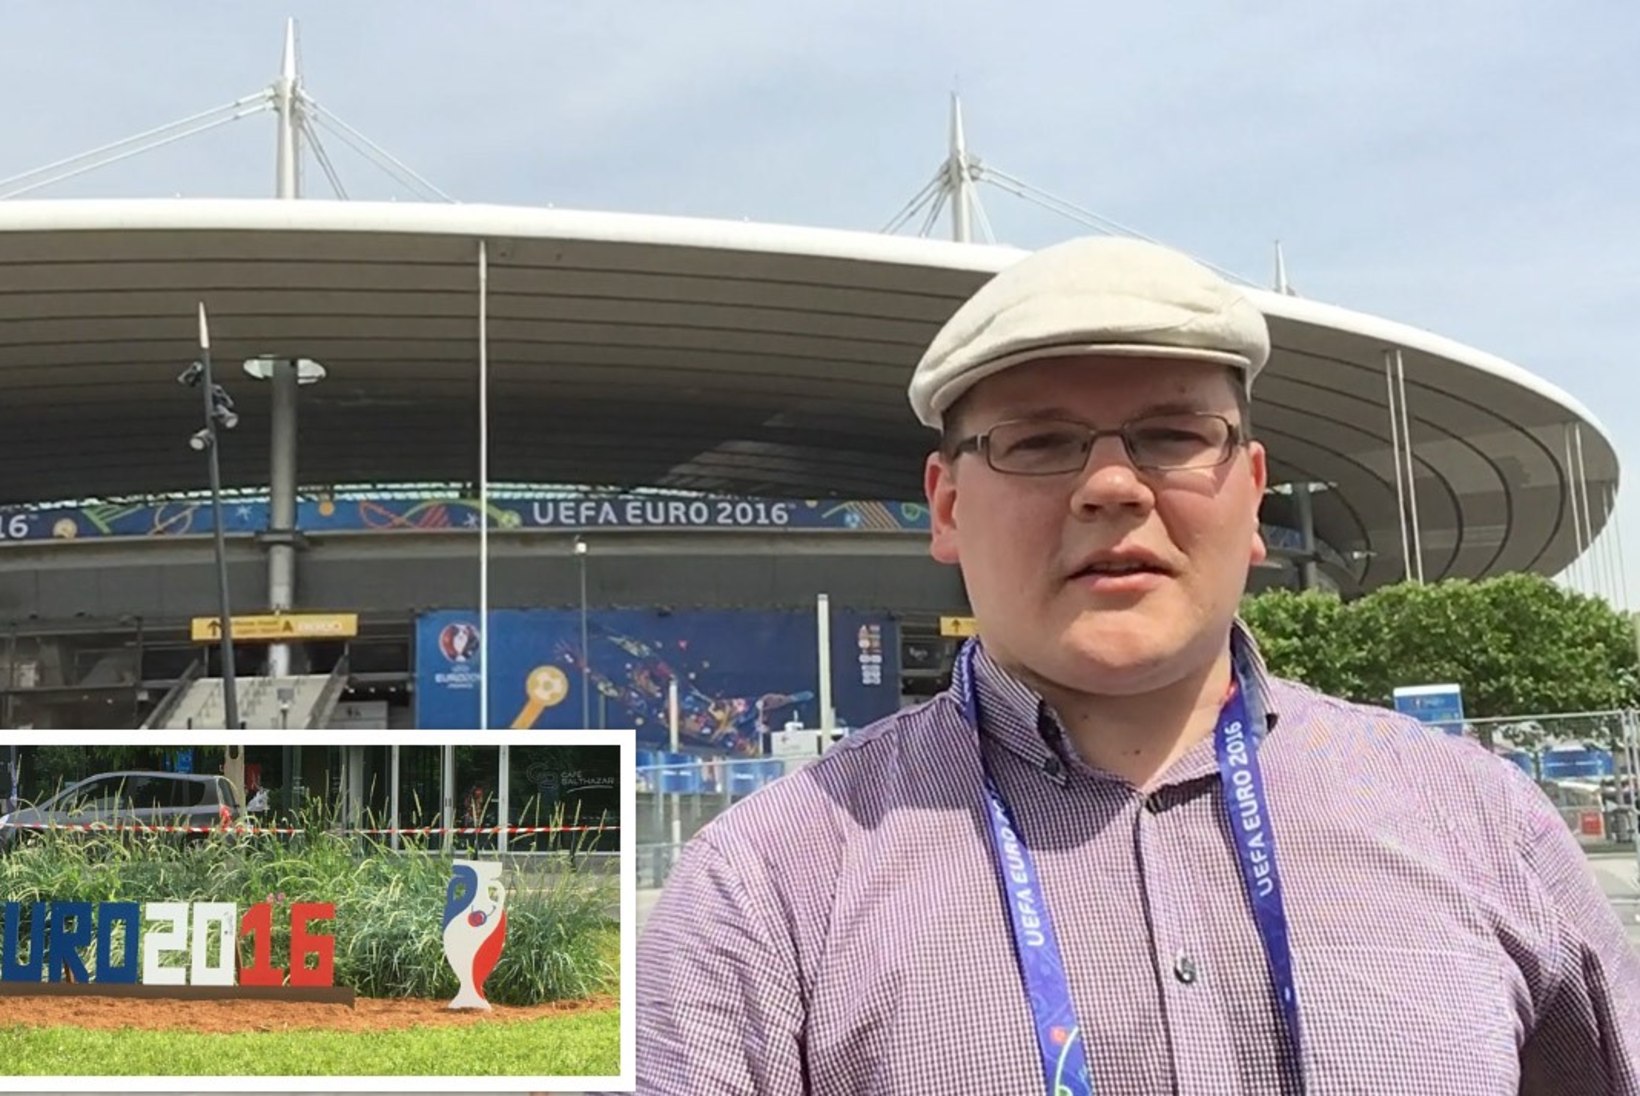 ÕL@EURO2016 | Videoblogi ja fotod Stade de France'i juurest EMi avalöögi eel